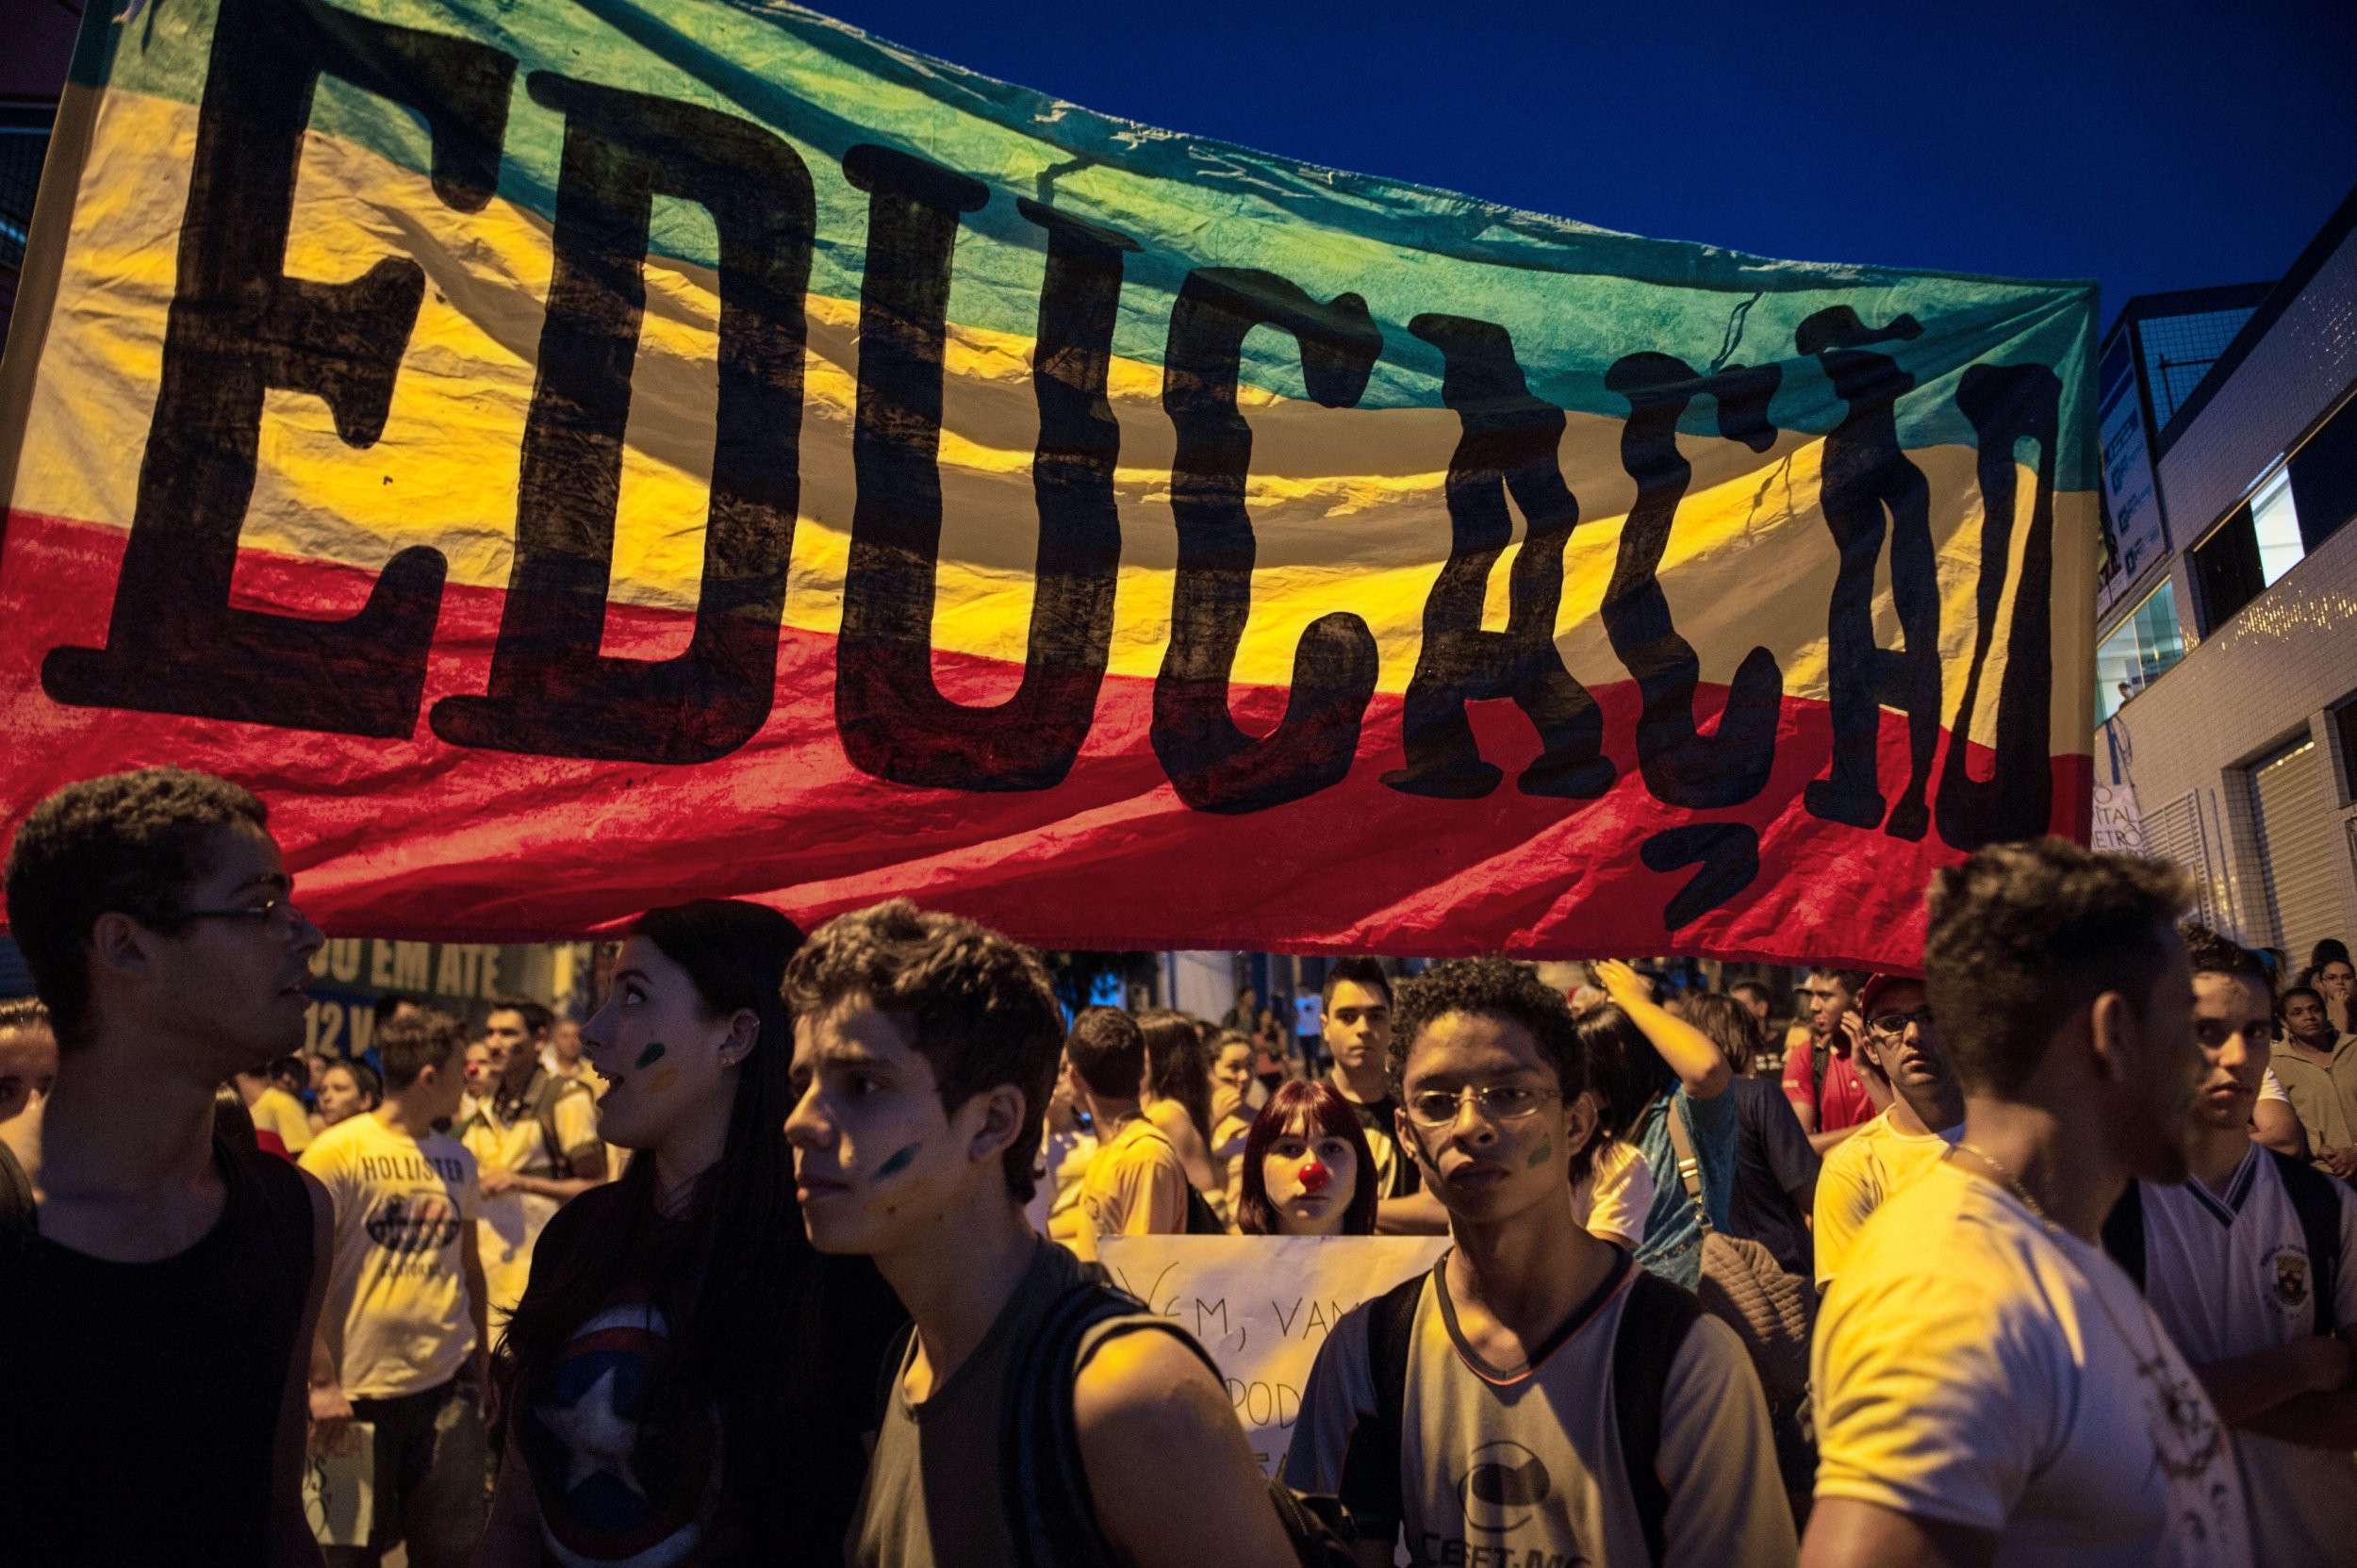 Next march. Образование в Бразилии.